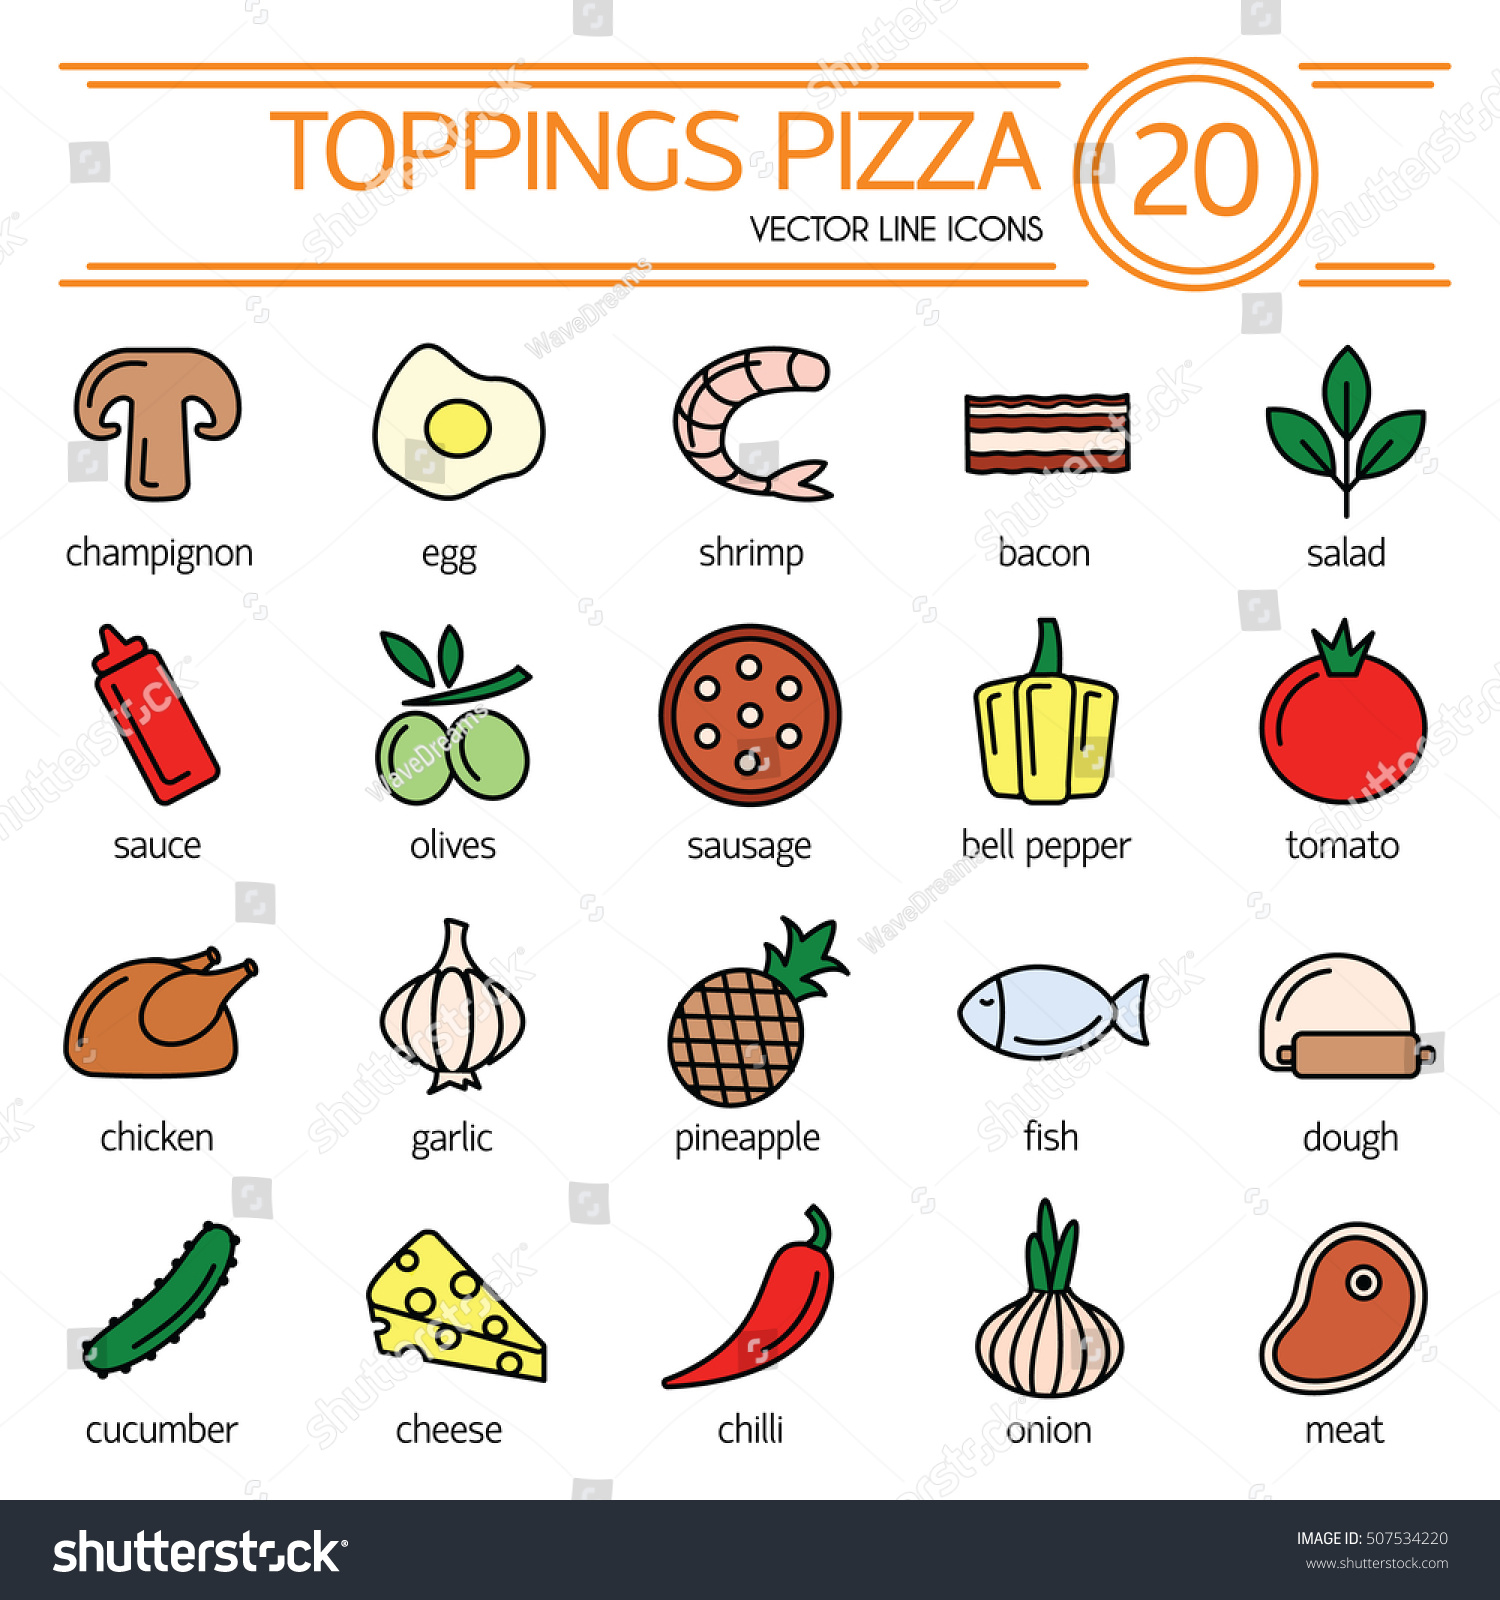 рецепты на английском пицца языке с переводом фото 20